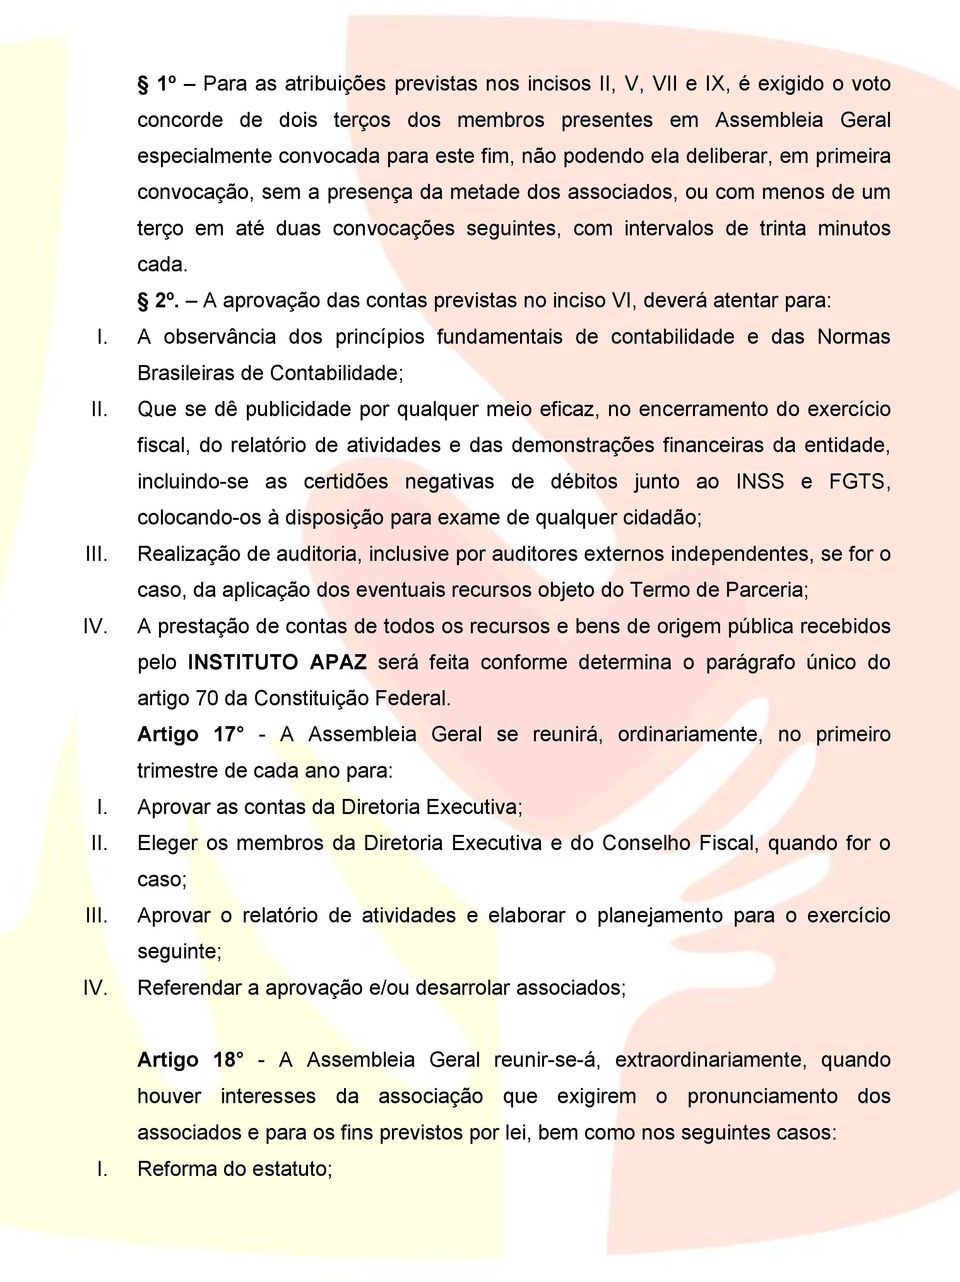 A aprovação das contas previstas no inciso VI, deverá atentar para: I. A observância dos princípios fundamentais de contabilidade e das Normas Brasileiras de Contabilidade; II.